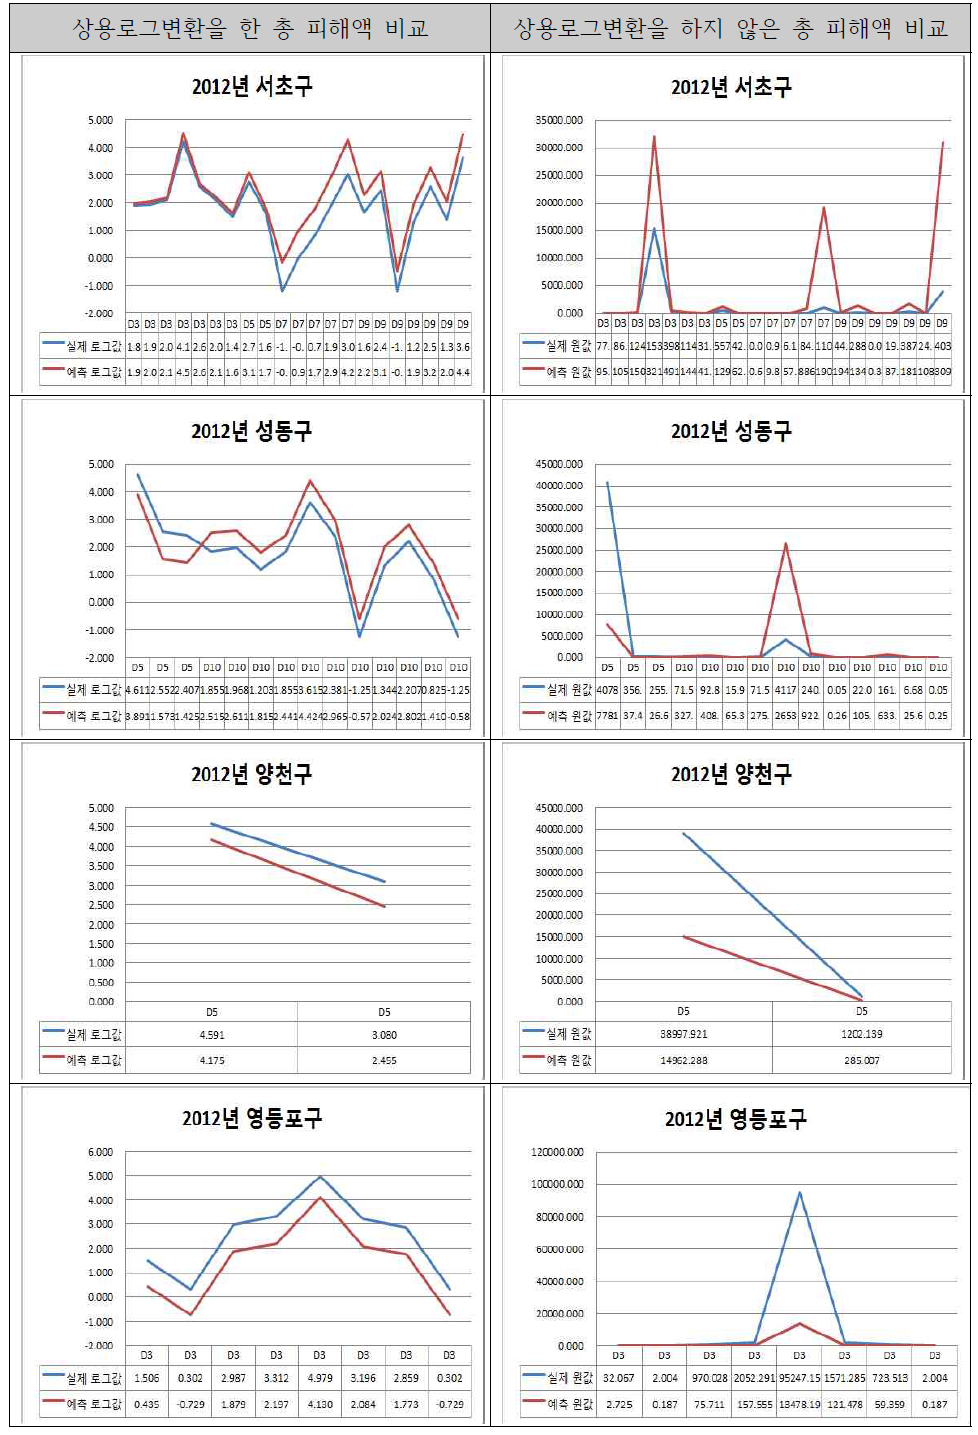 서울시 자치구별 상용로그 변환 유무에 따른 총 피해액 비교(3)